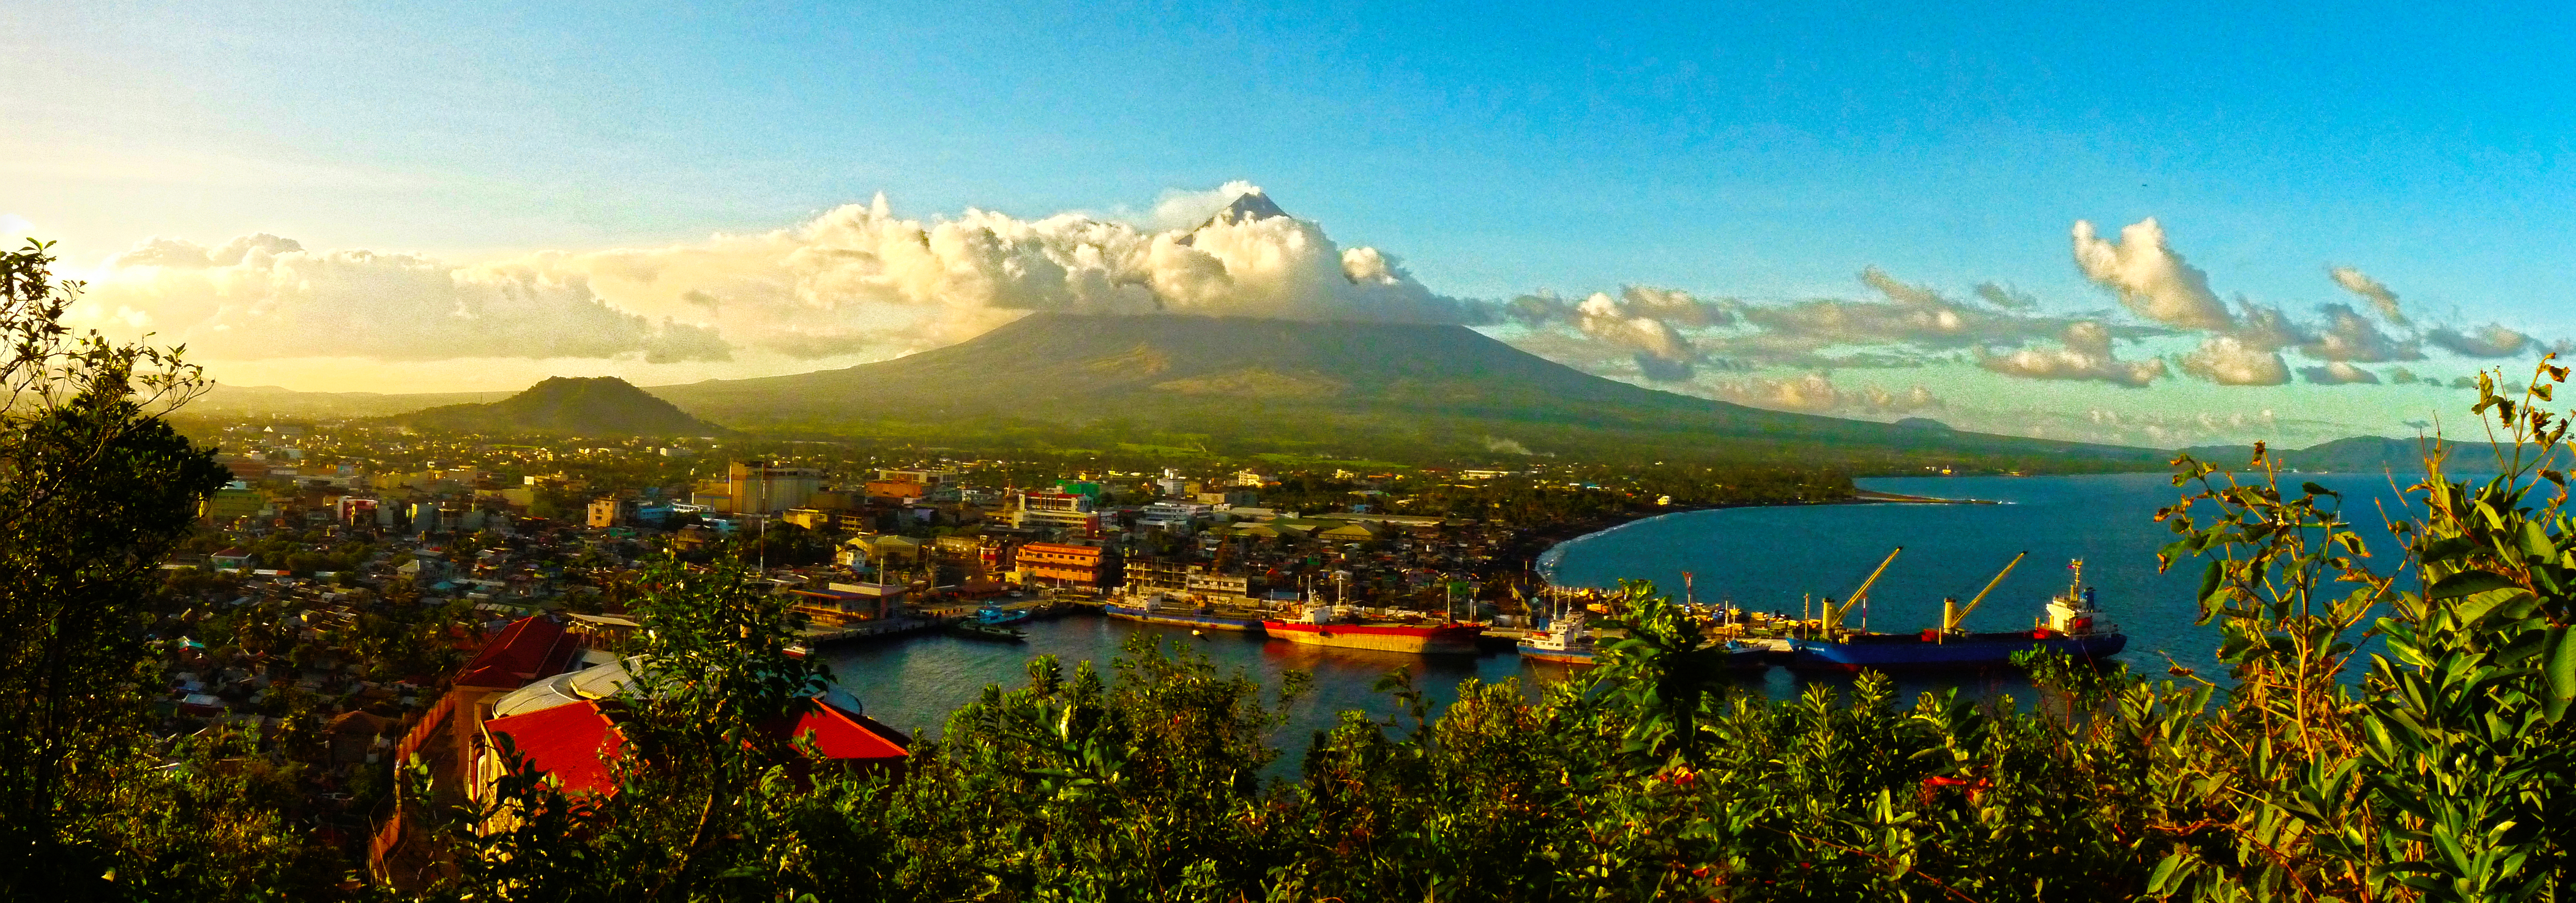 Mayon Volcano - panoramio.jpg